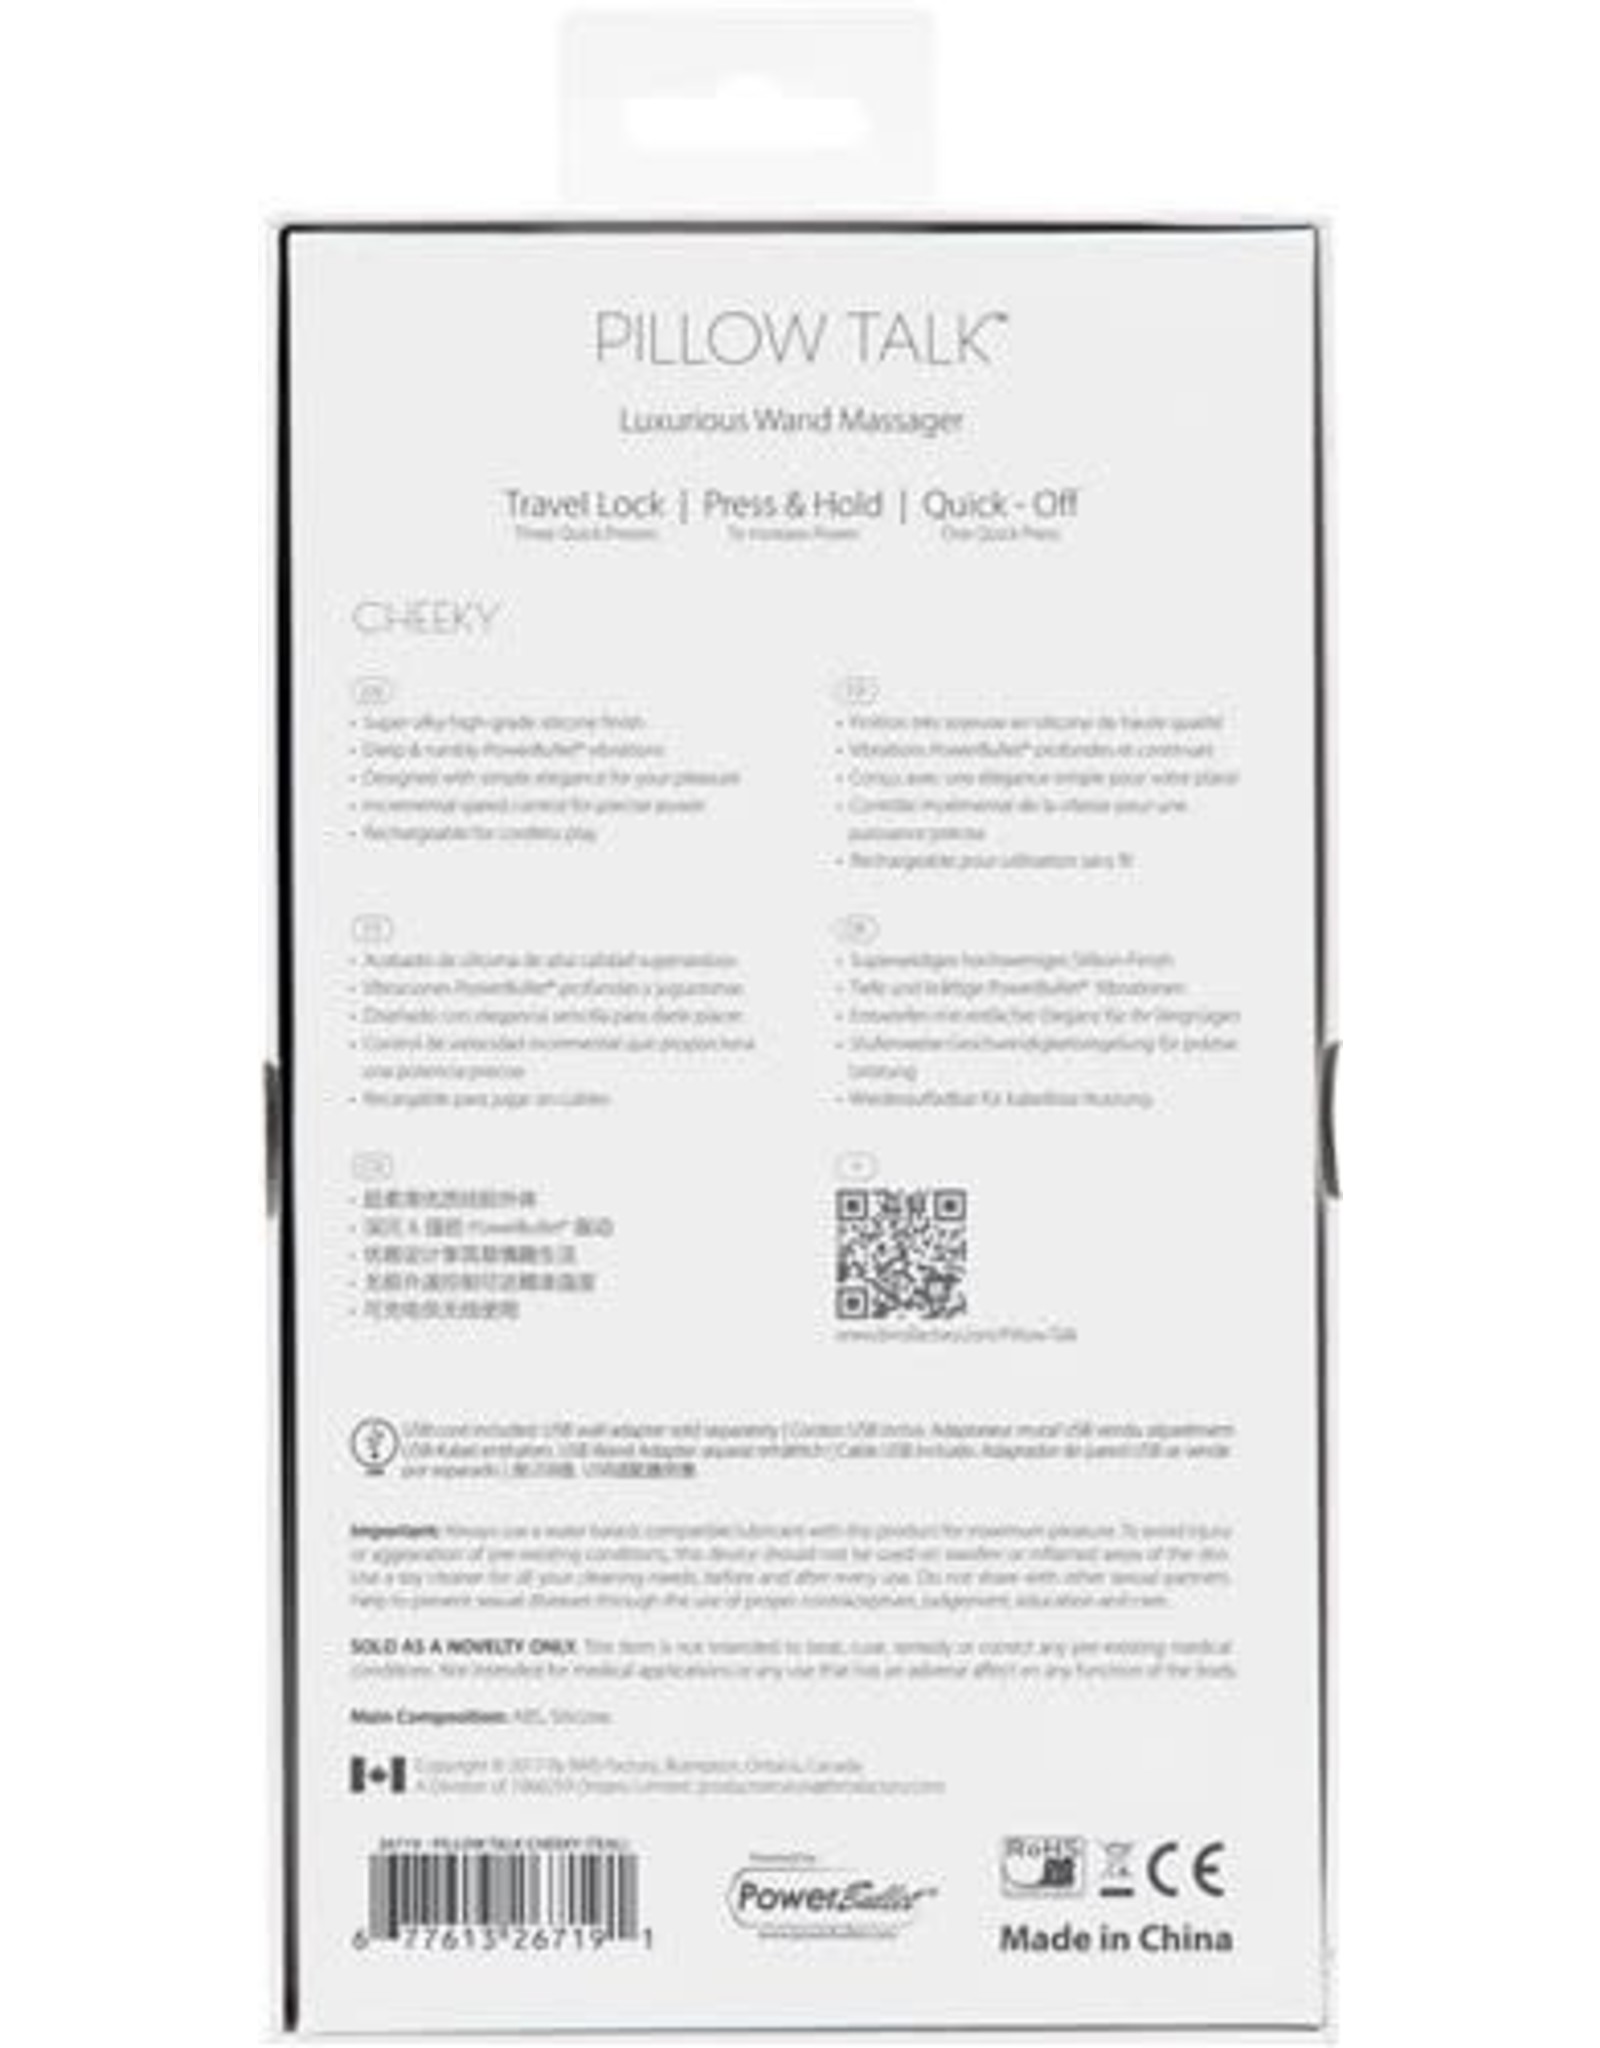 Pillow Talk Pillow Talk - Cheeky Wand (teal)